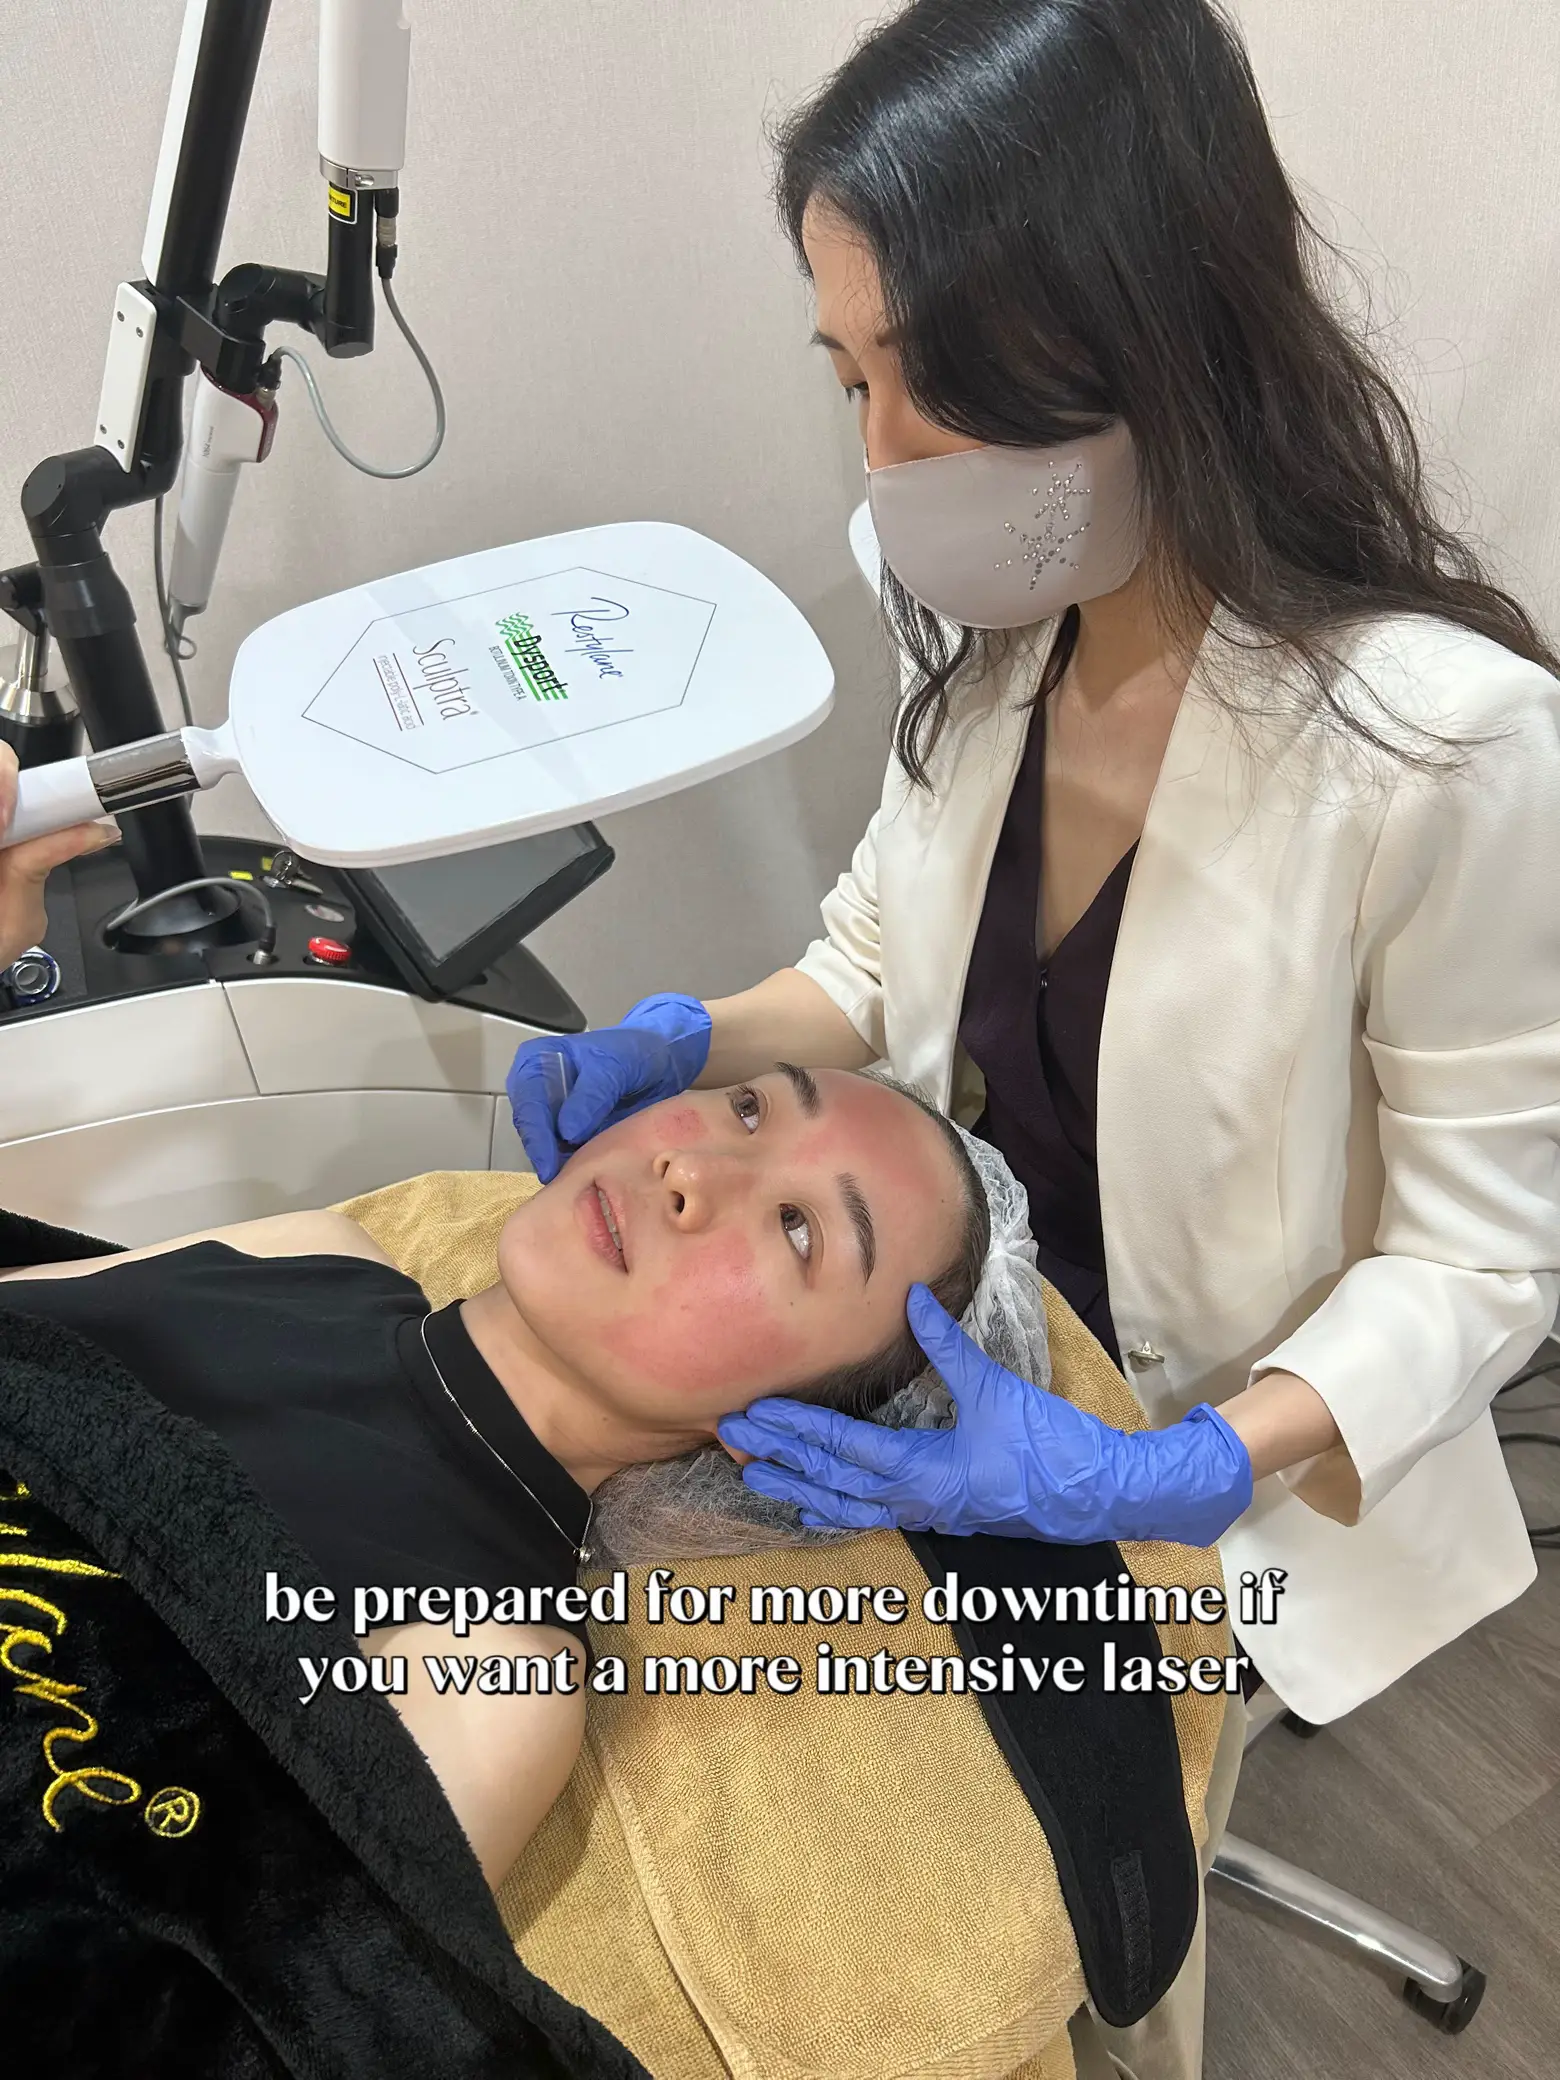 Pico Laser after 2 wks⚡️ Let’s talk skin treatments's images(5)